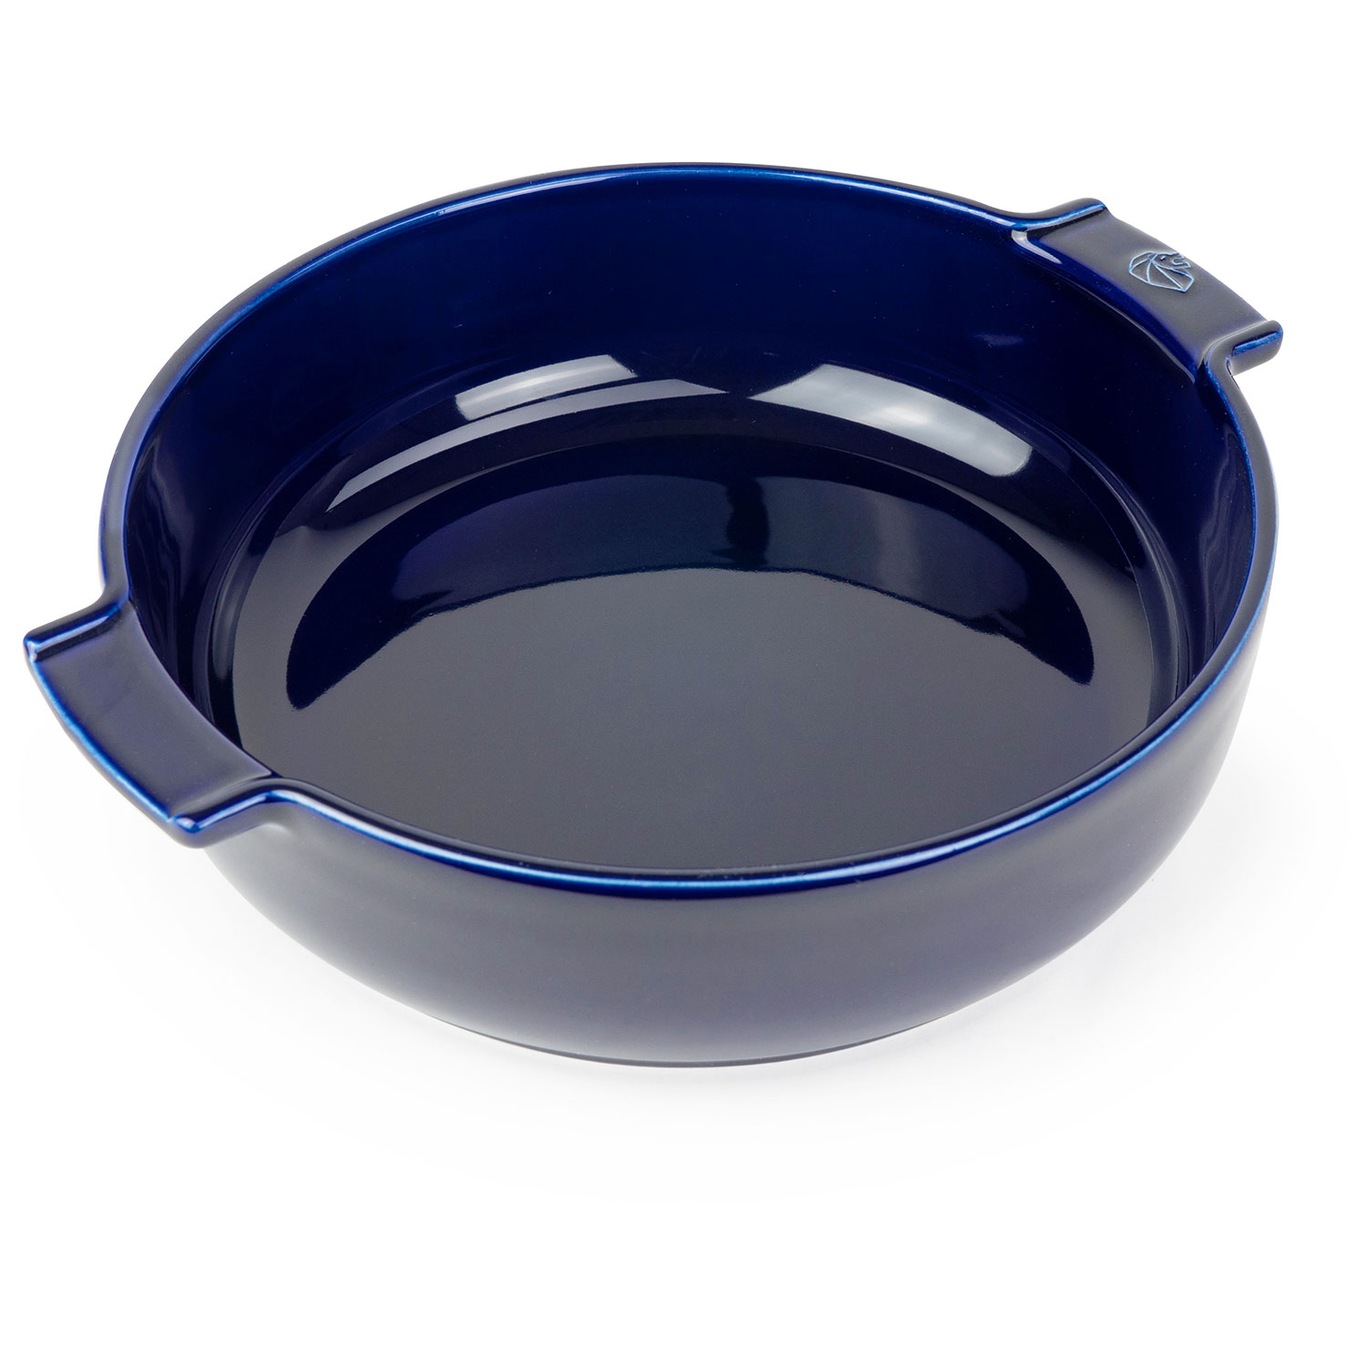 Appolia Oven Dish 23 cm, Blue